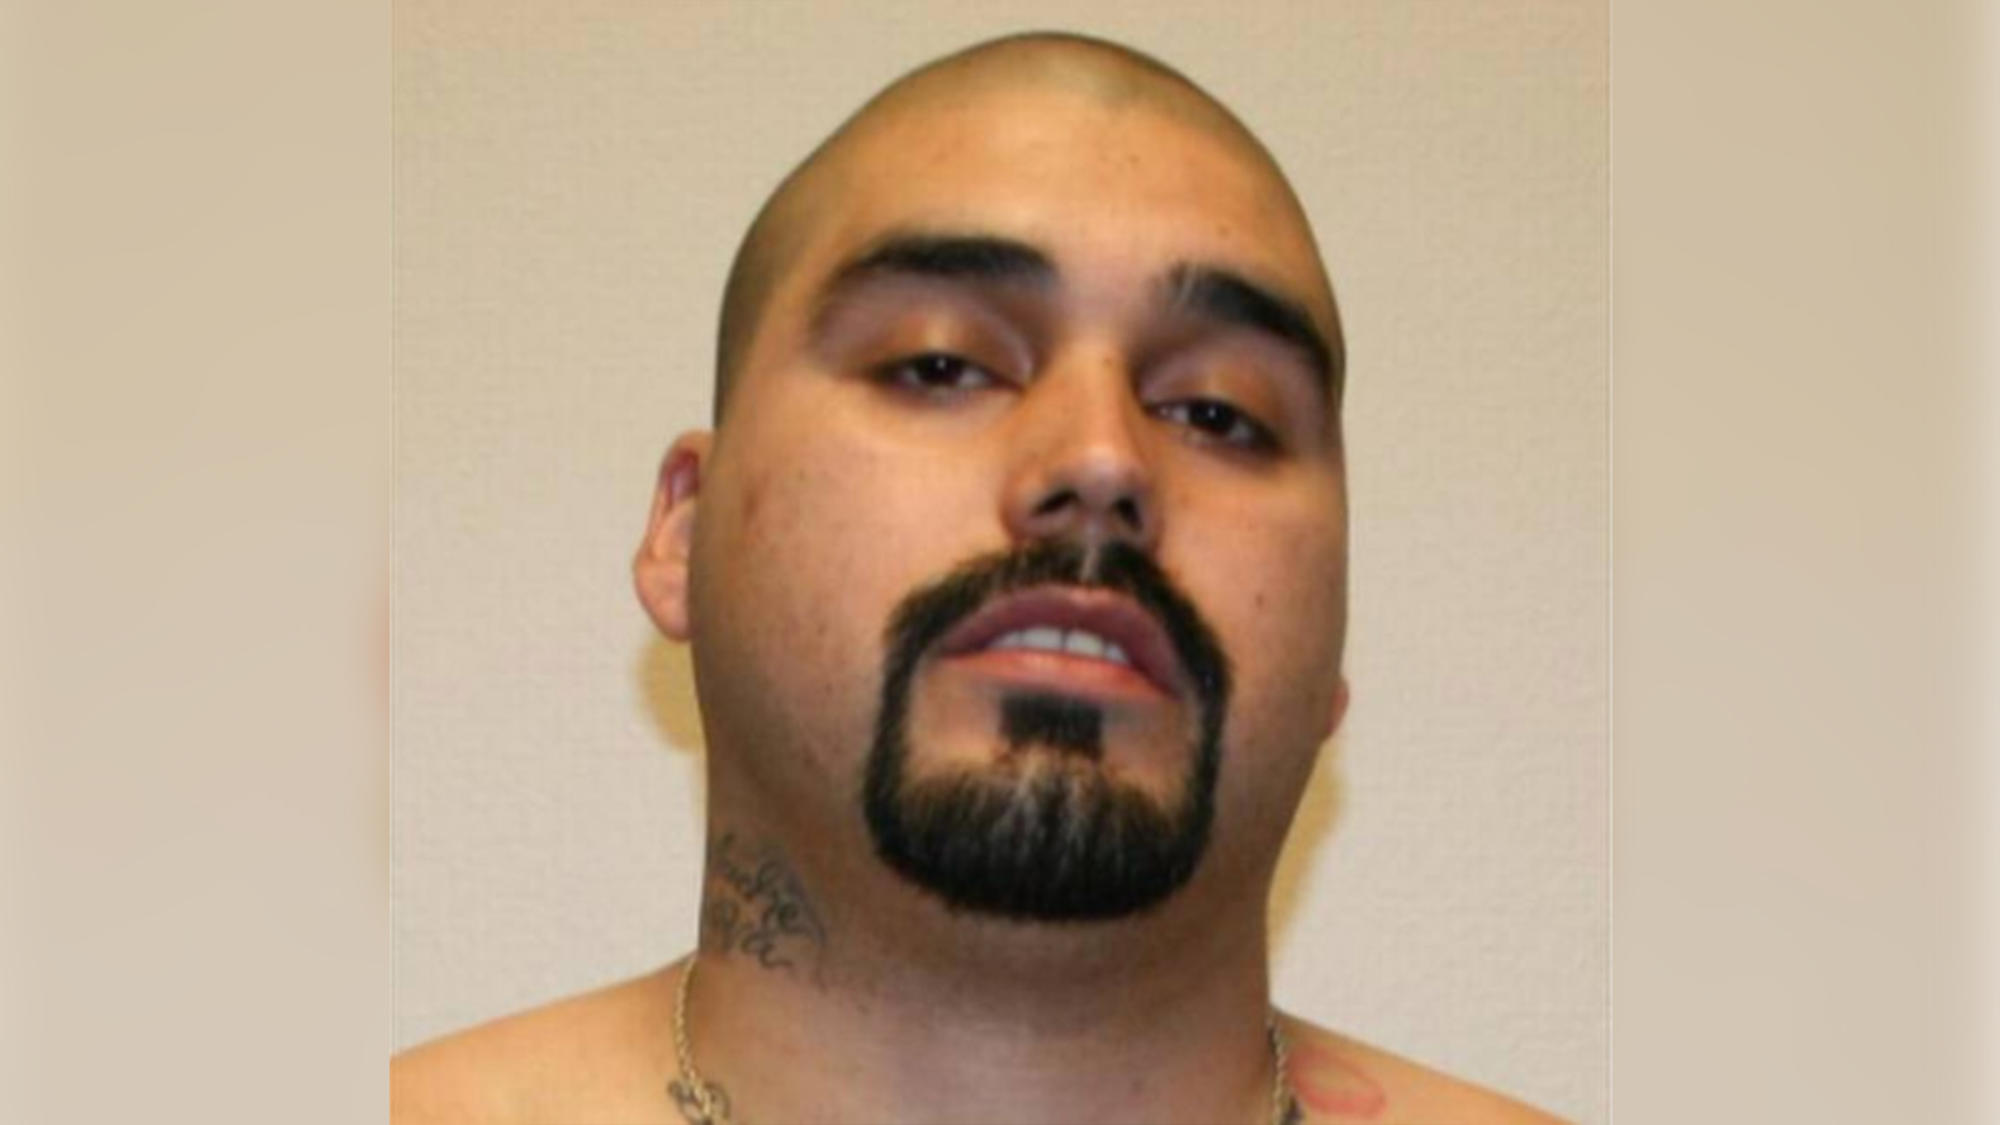 Condenan a 153 años en prisión al hispano que mató a un inmigrante en California